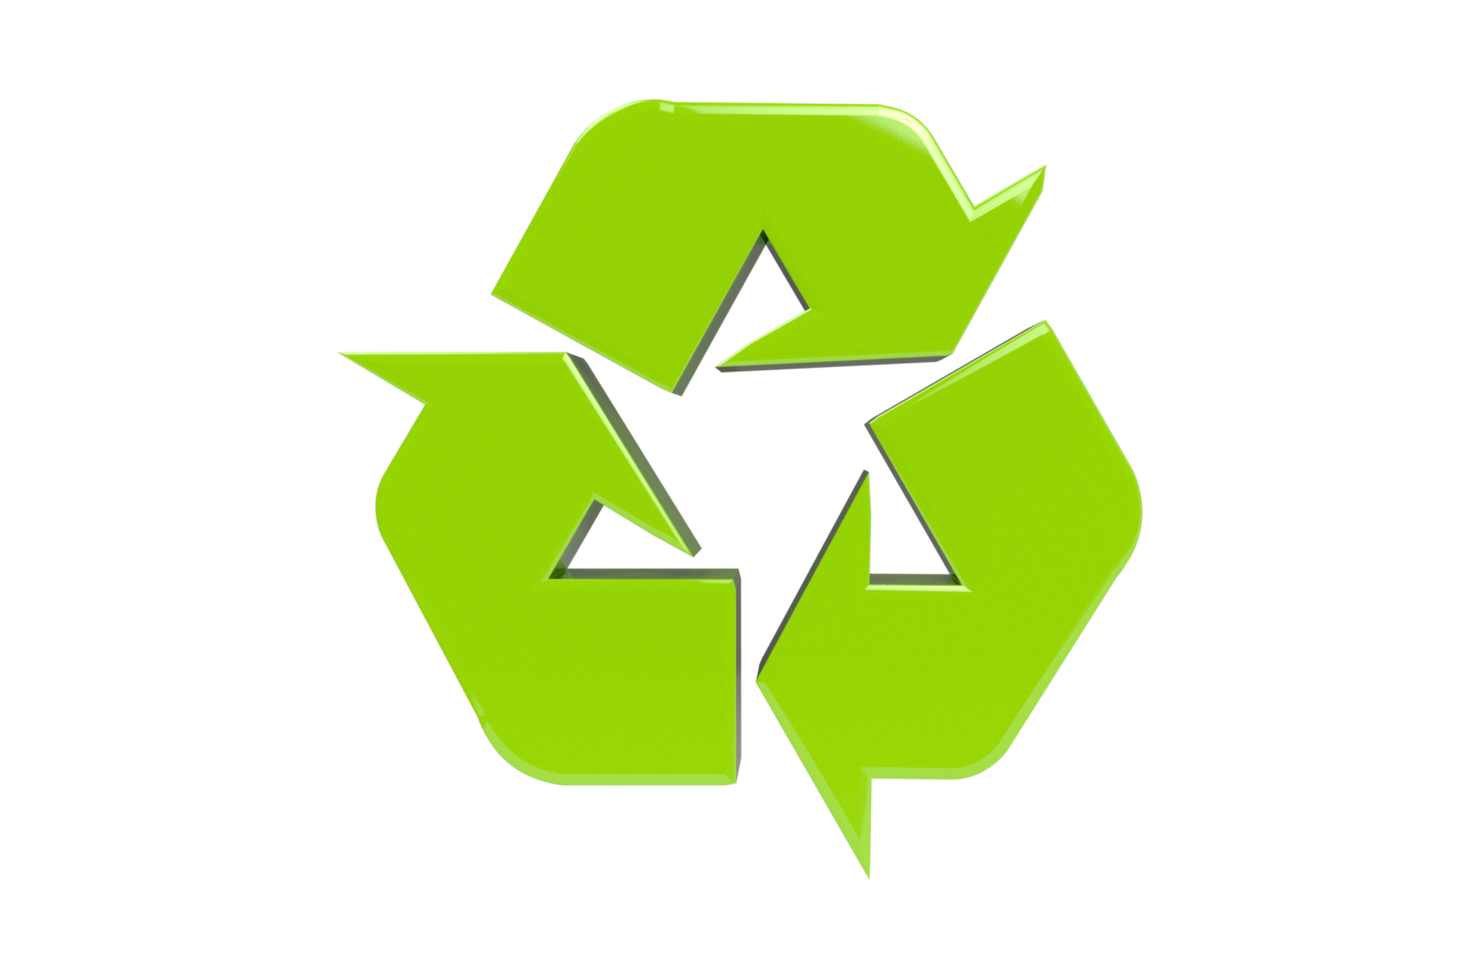 3d símbolo de reciclagem verde brilhante png fundo transparente